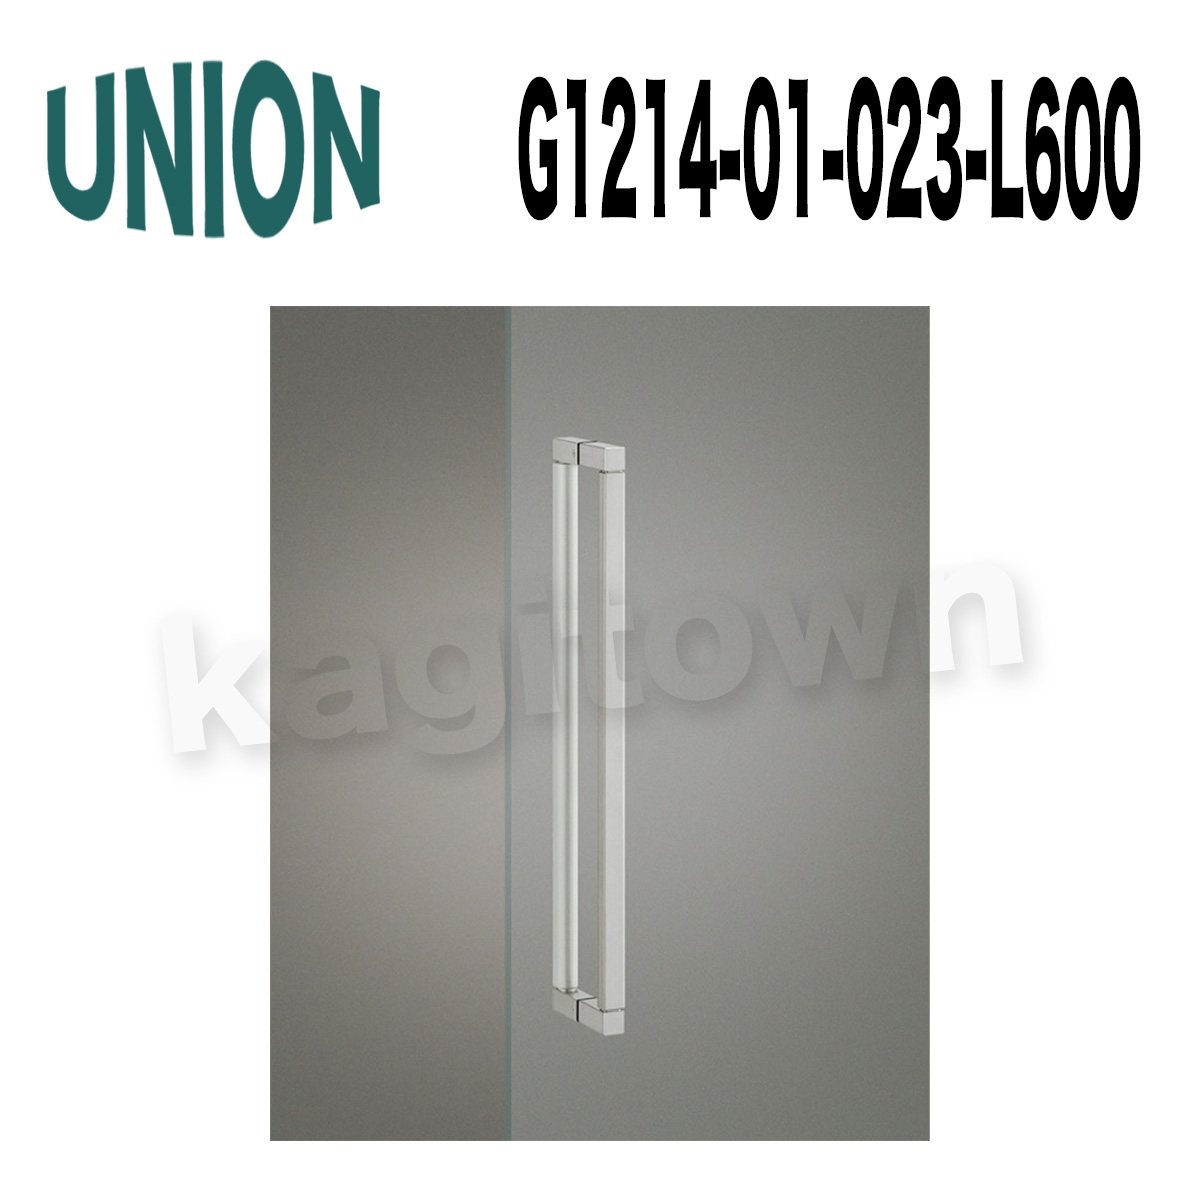 UNION【ユニオン】G1214-01-023-L600 ドアハンドル]押し棒（内外）